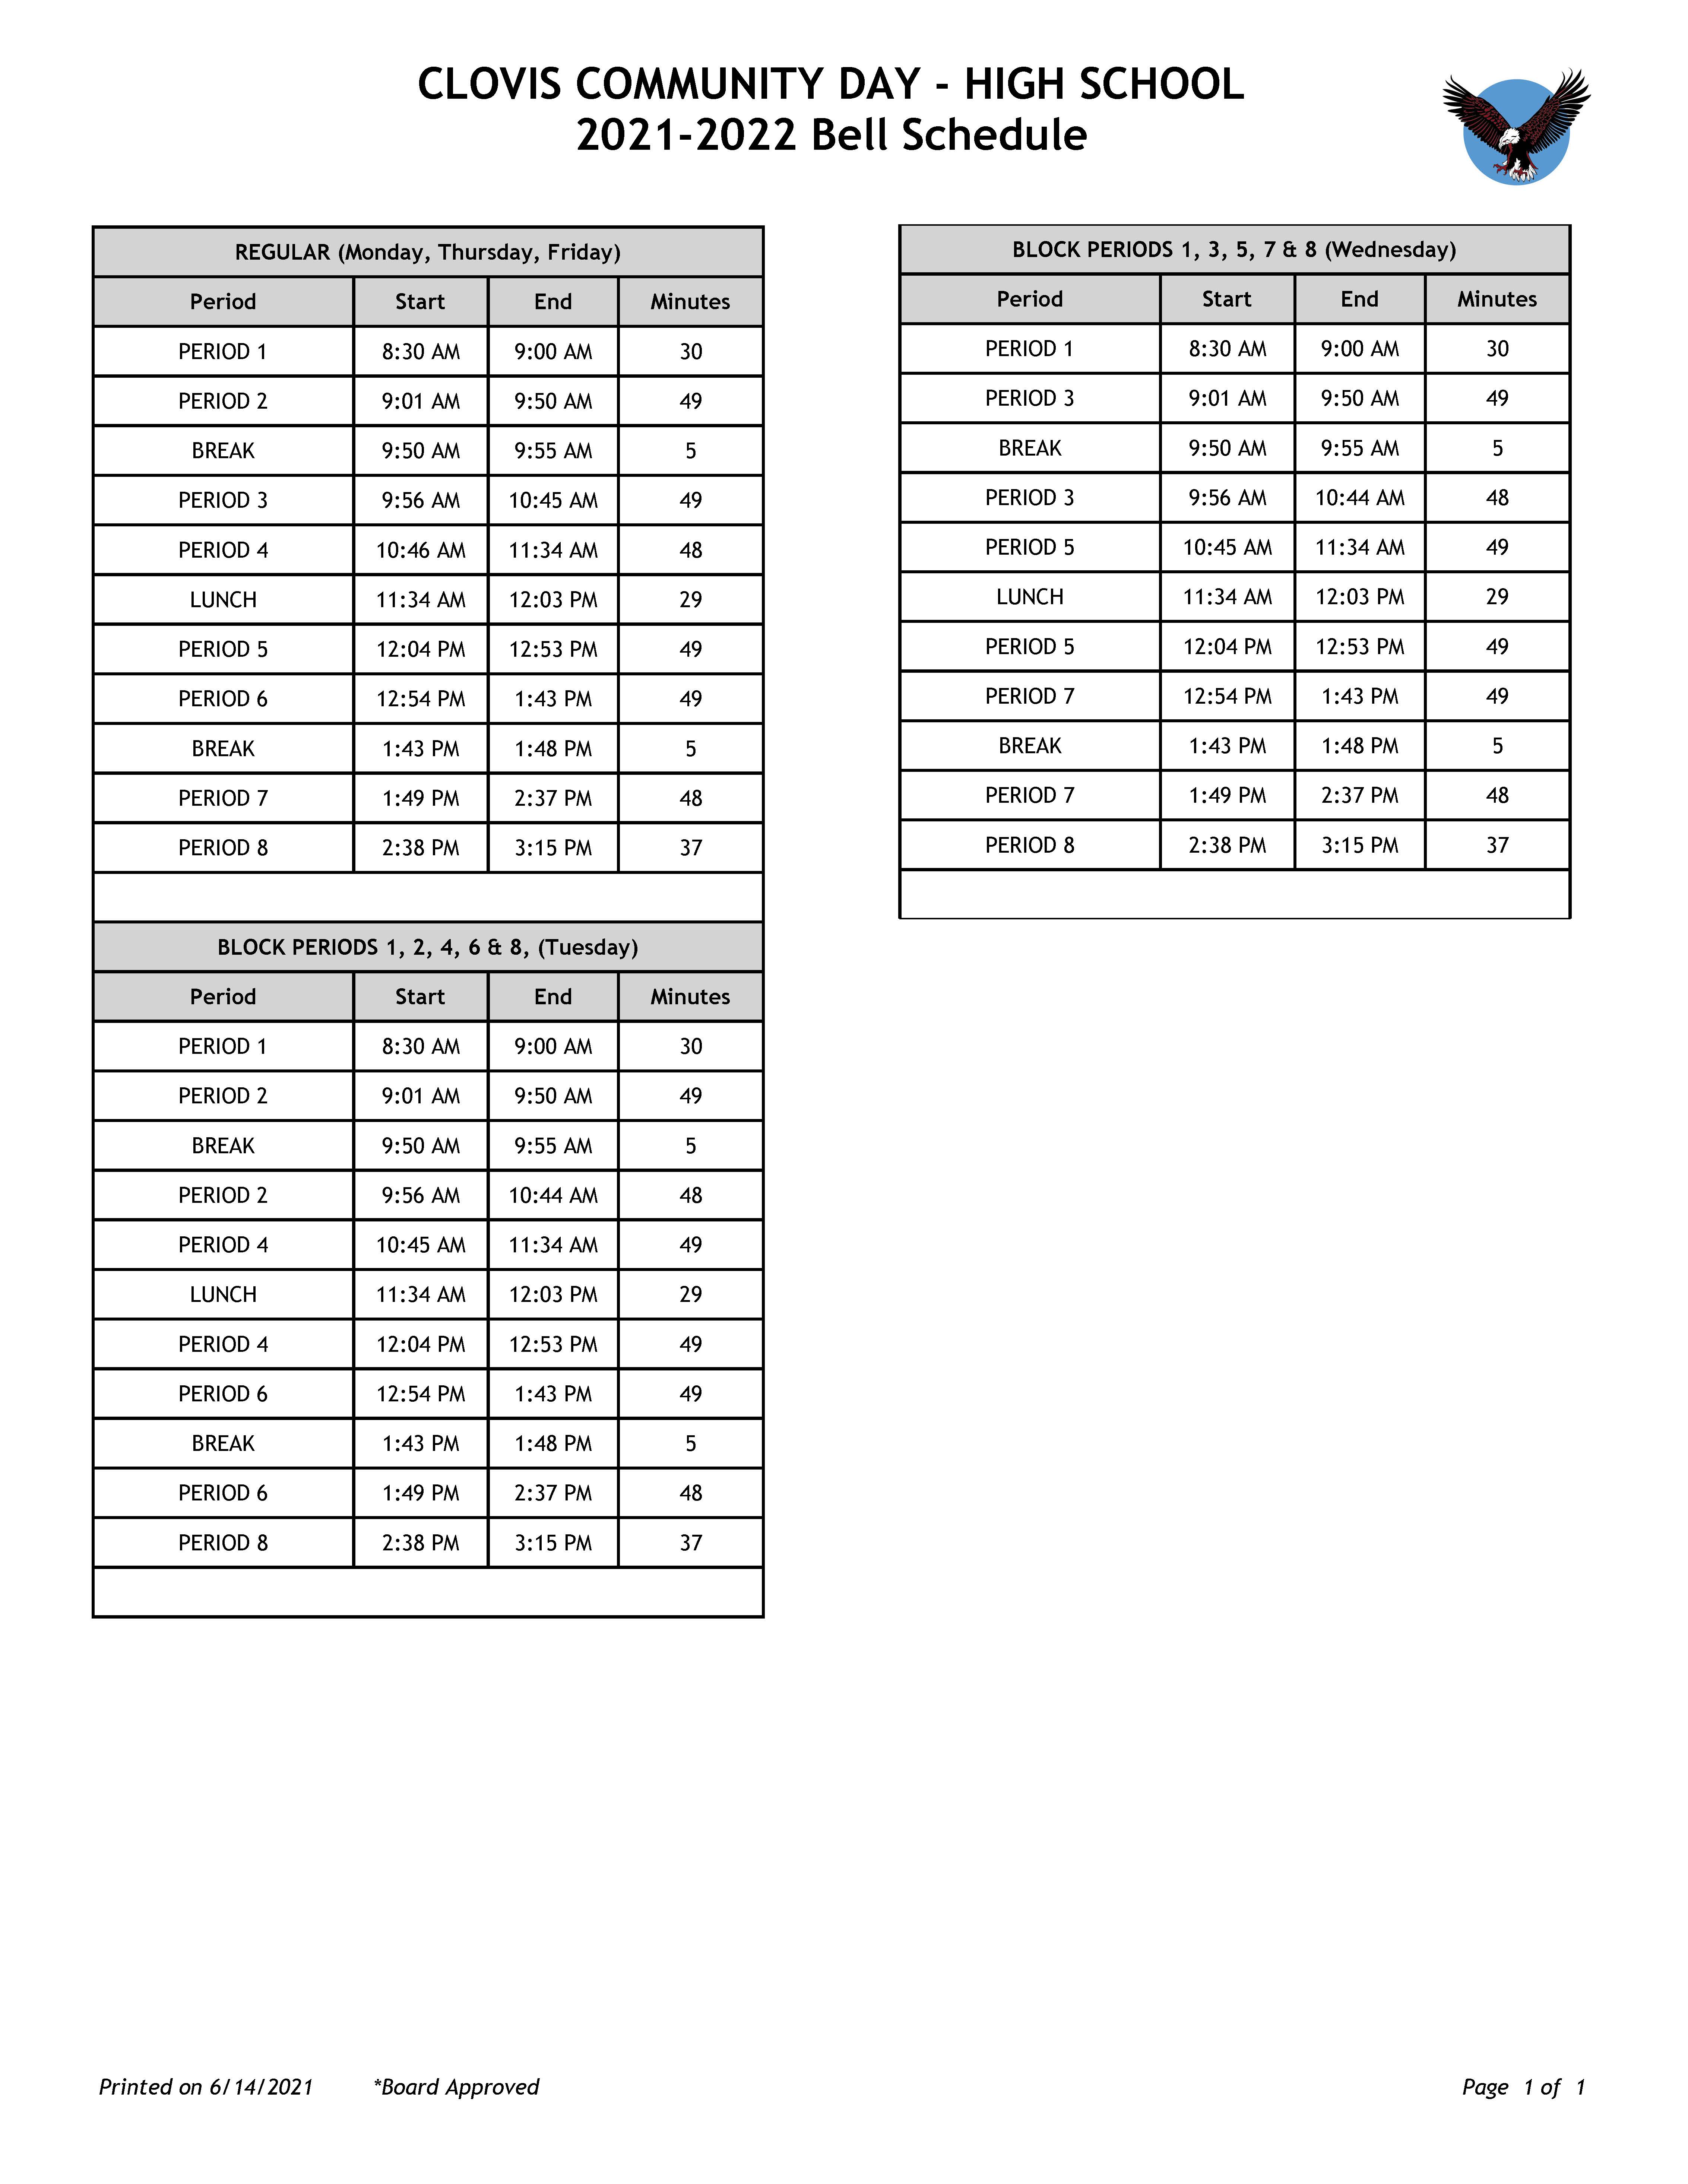 CCDS High School Bell Schedule - full copy downloadable below